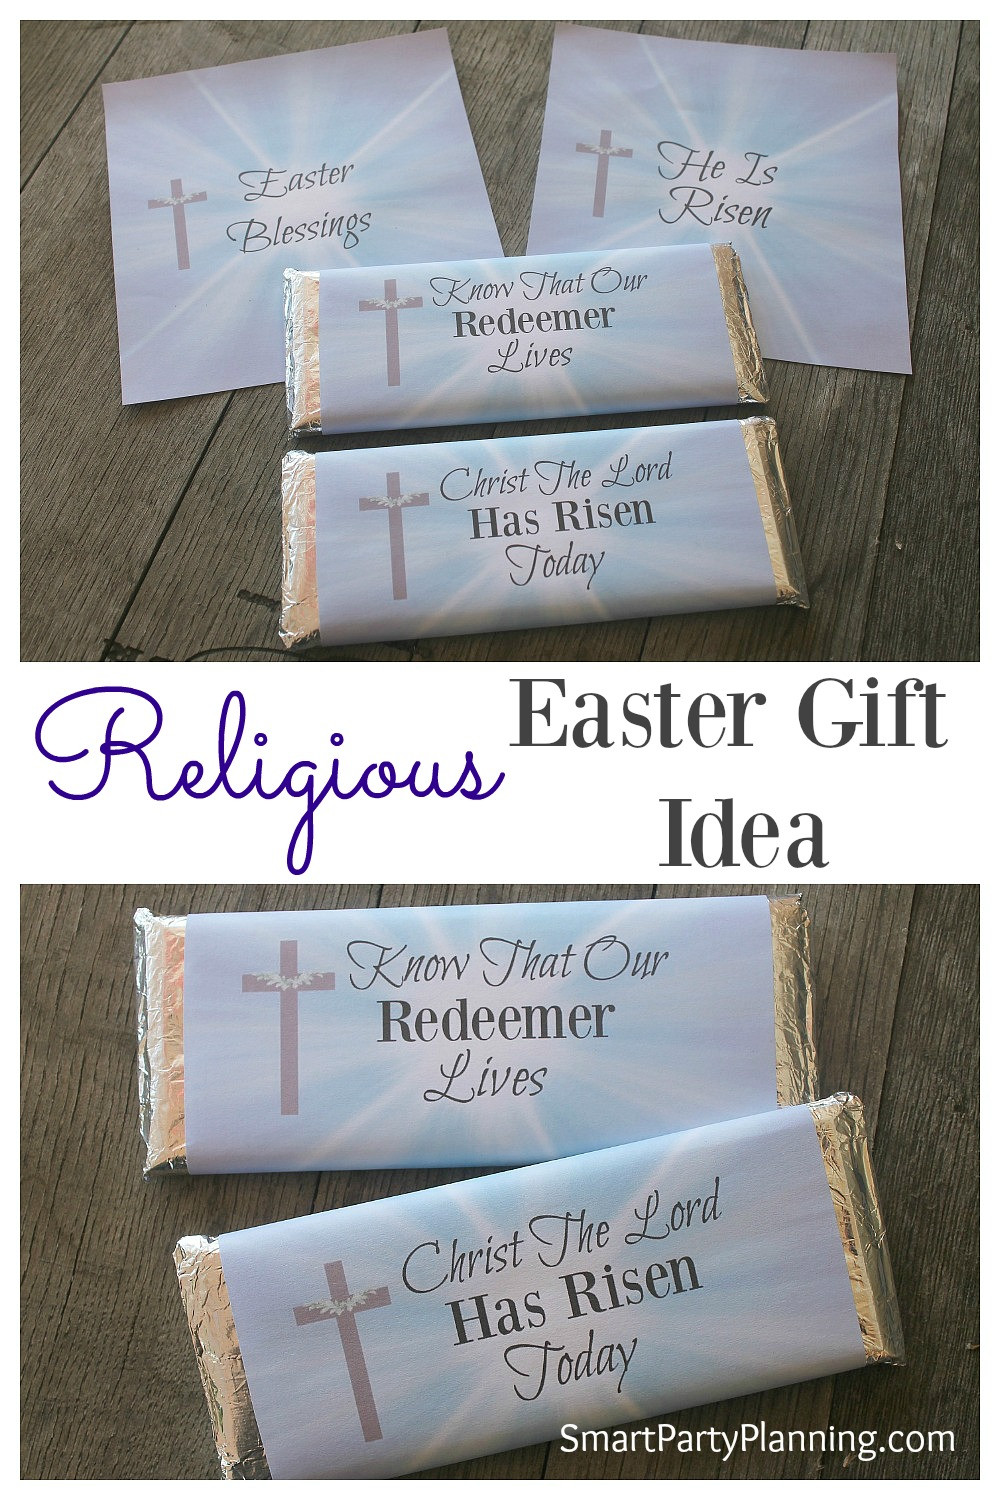 Religious Easter Gift
 Religious Easter Gift Idea